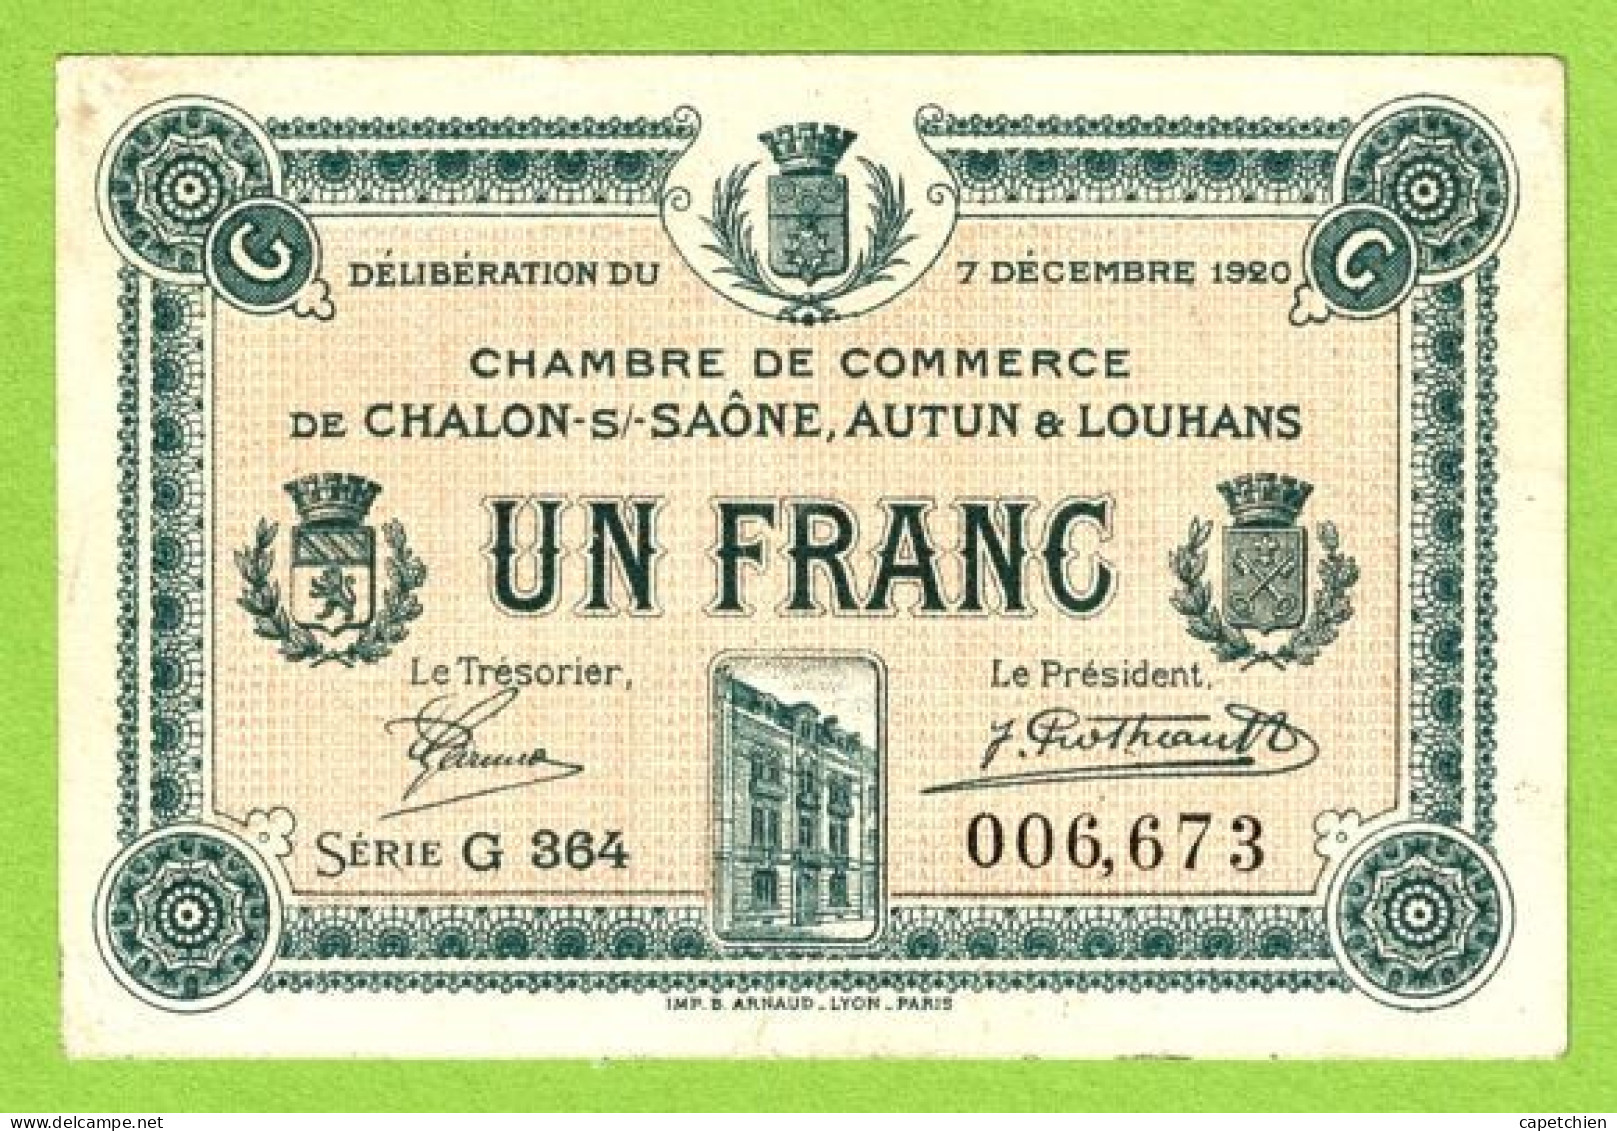 FRANCE / CHAMBRE De COMMERCE / CHALON SUE SAÔNE/ AUTUN / LOUHANS 1 FRANC / 7 DECEMBRE 1920 / 006673 / SERIE G 364 - Camera Di Commercio